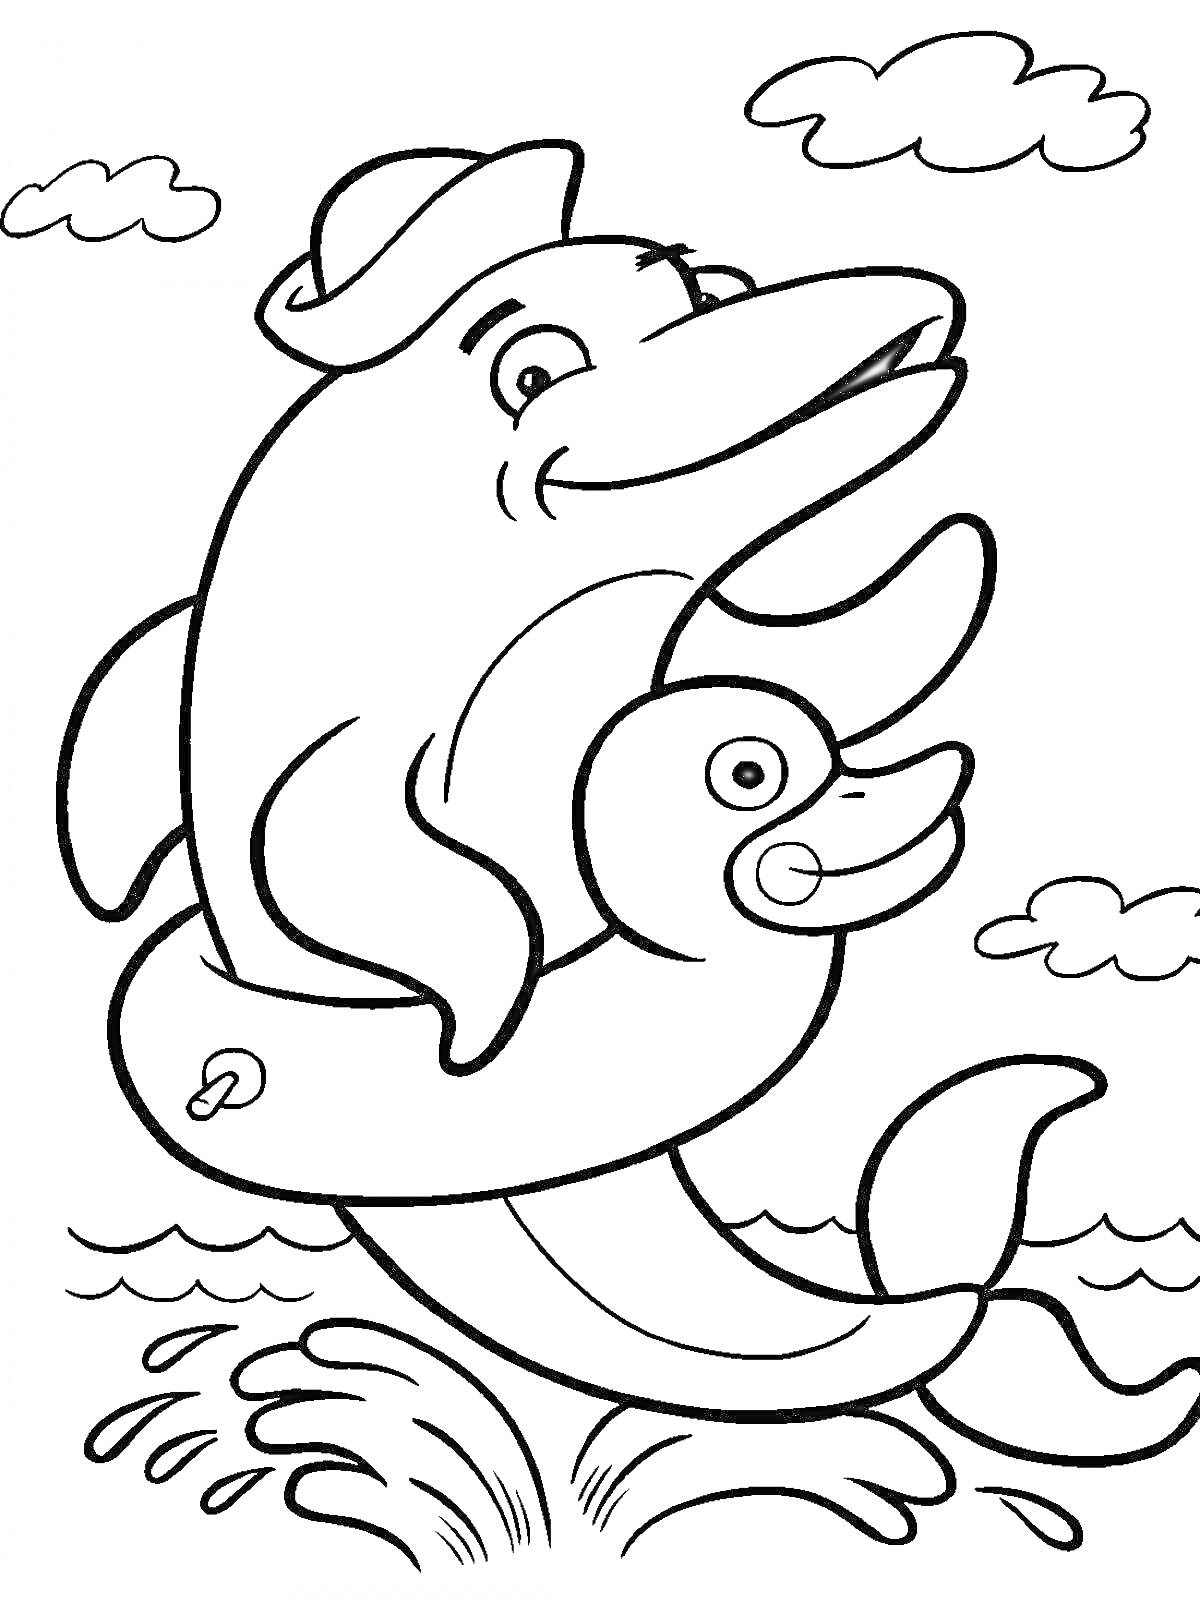 Дельфин с игрушечным кругом и шапкой, плывущий в море, на фоне облаков